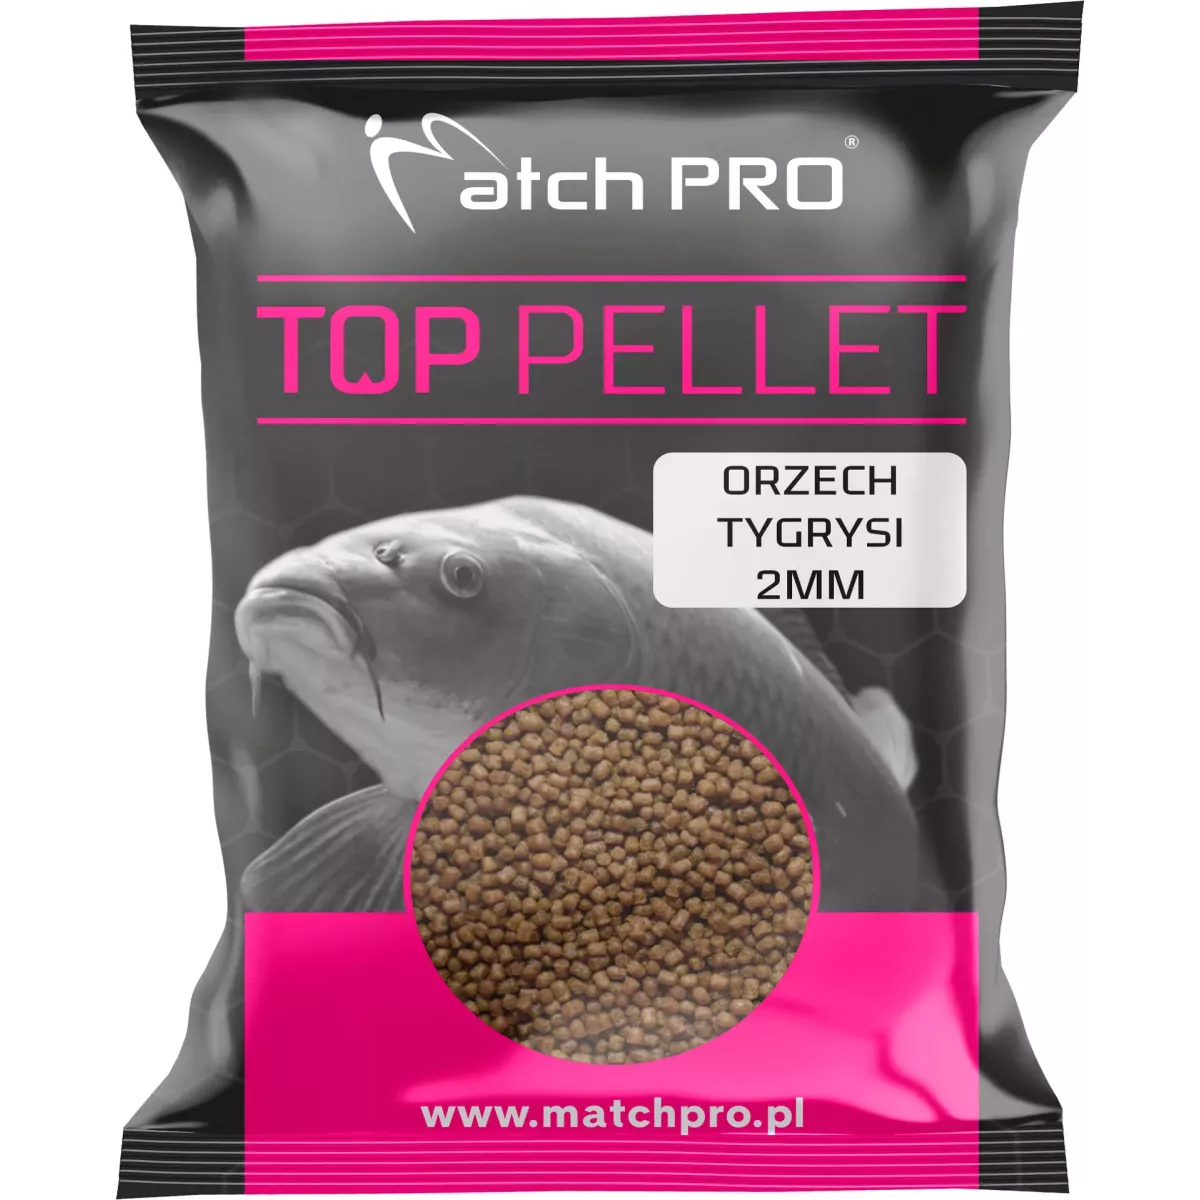 Pellet MatchPro TOP 2mm - ORZECH TYGRYSI